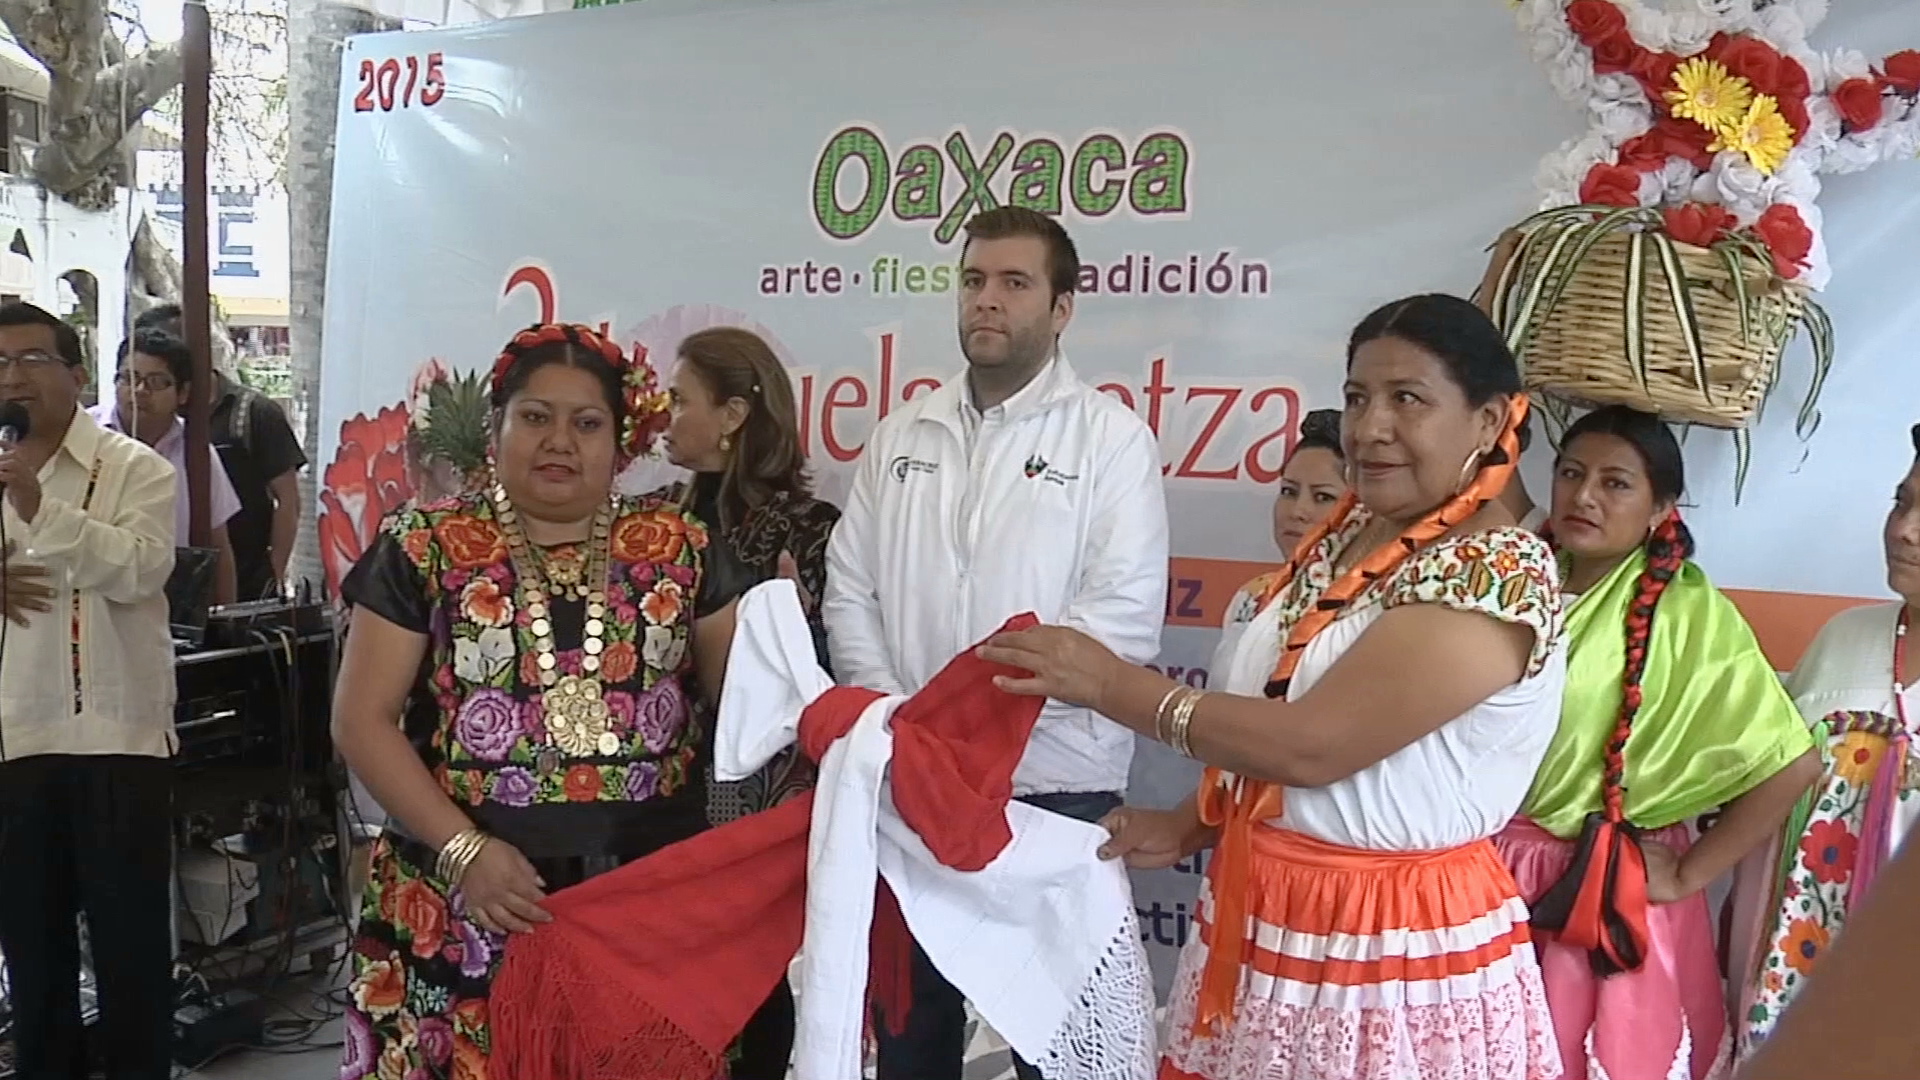 La esencia de Oaxaca en la “Guelaguetza en Veracruz”